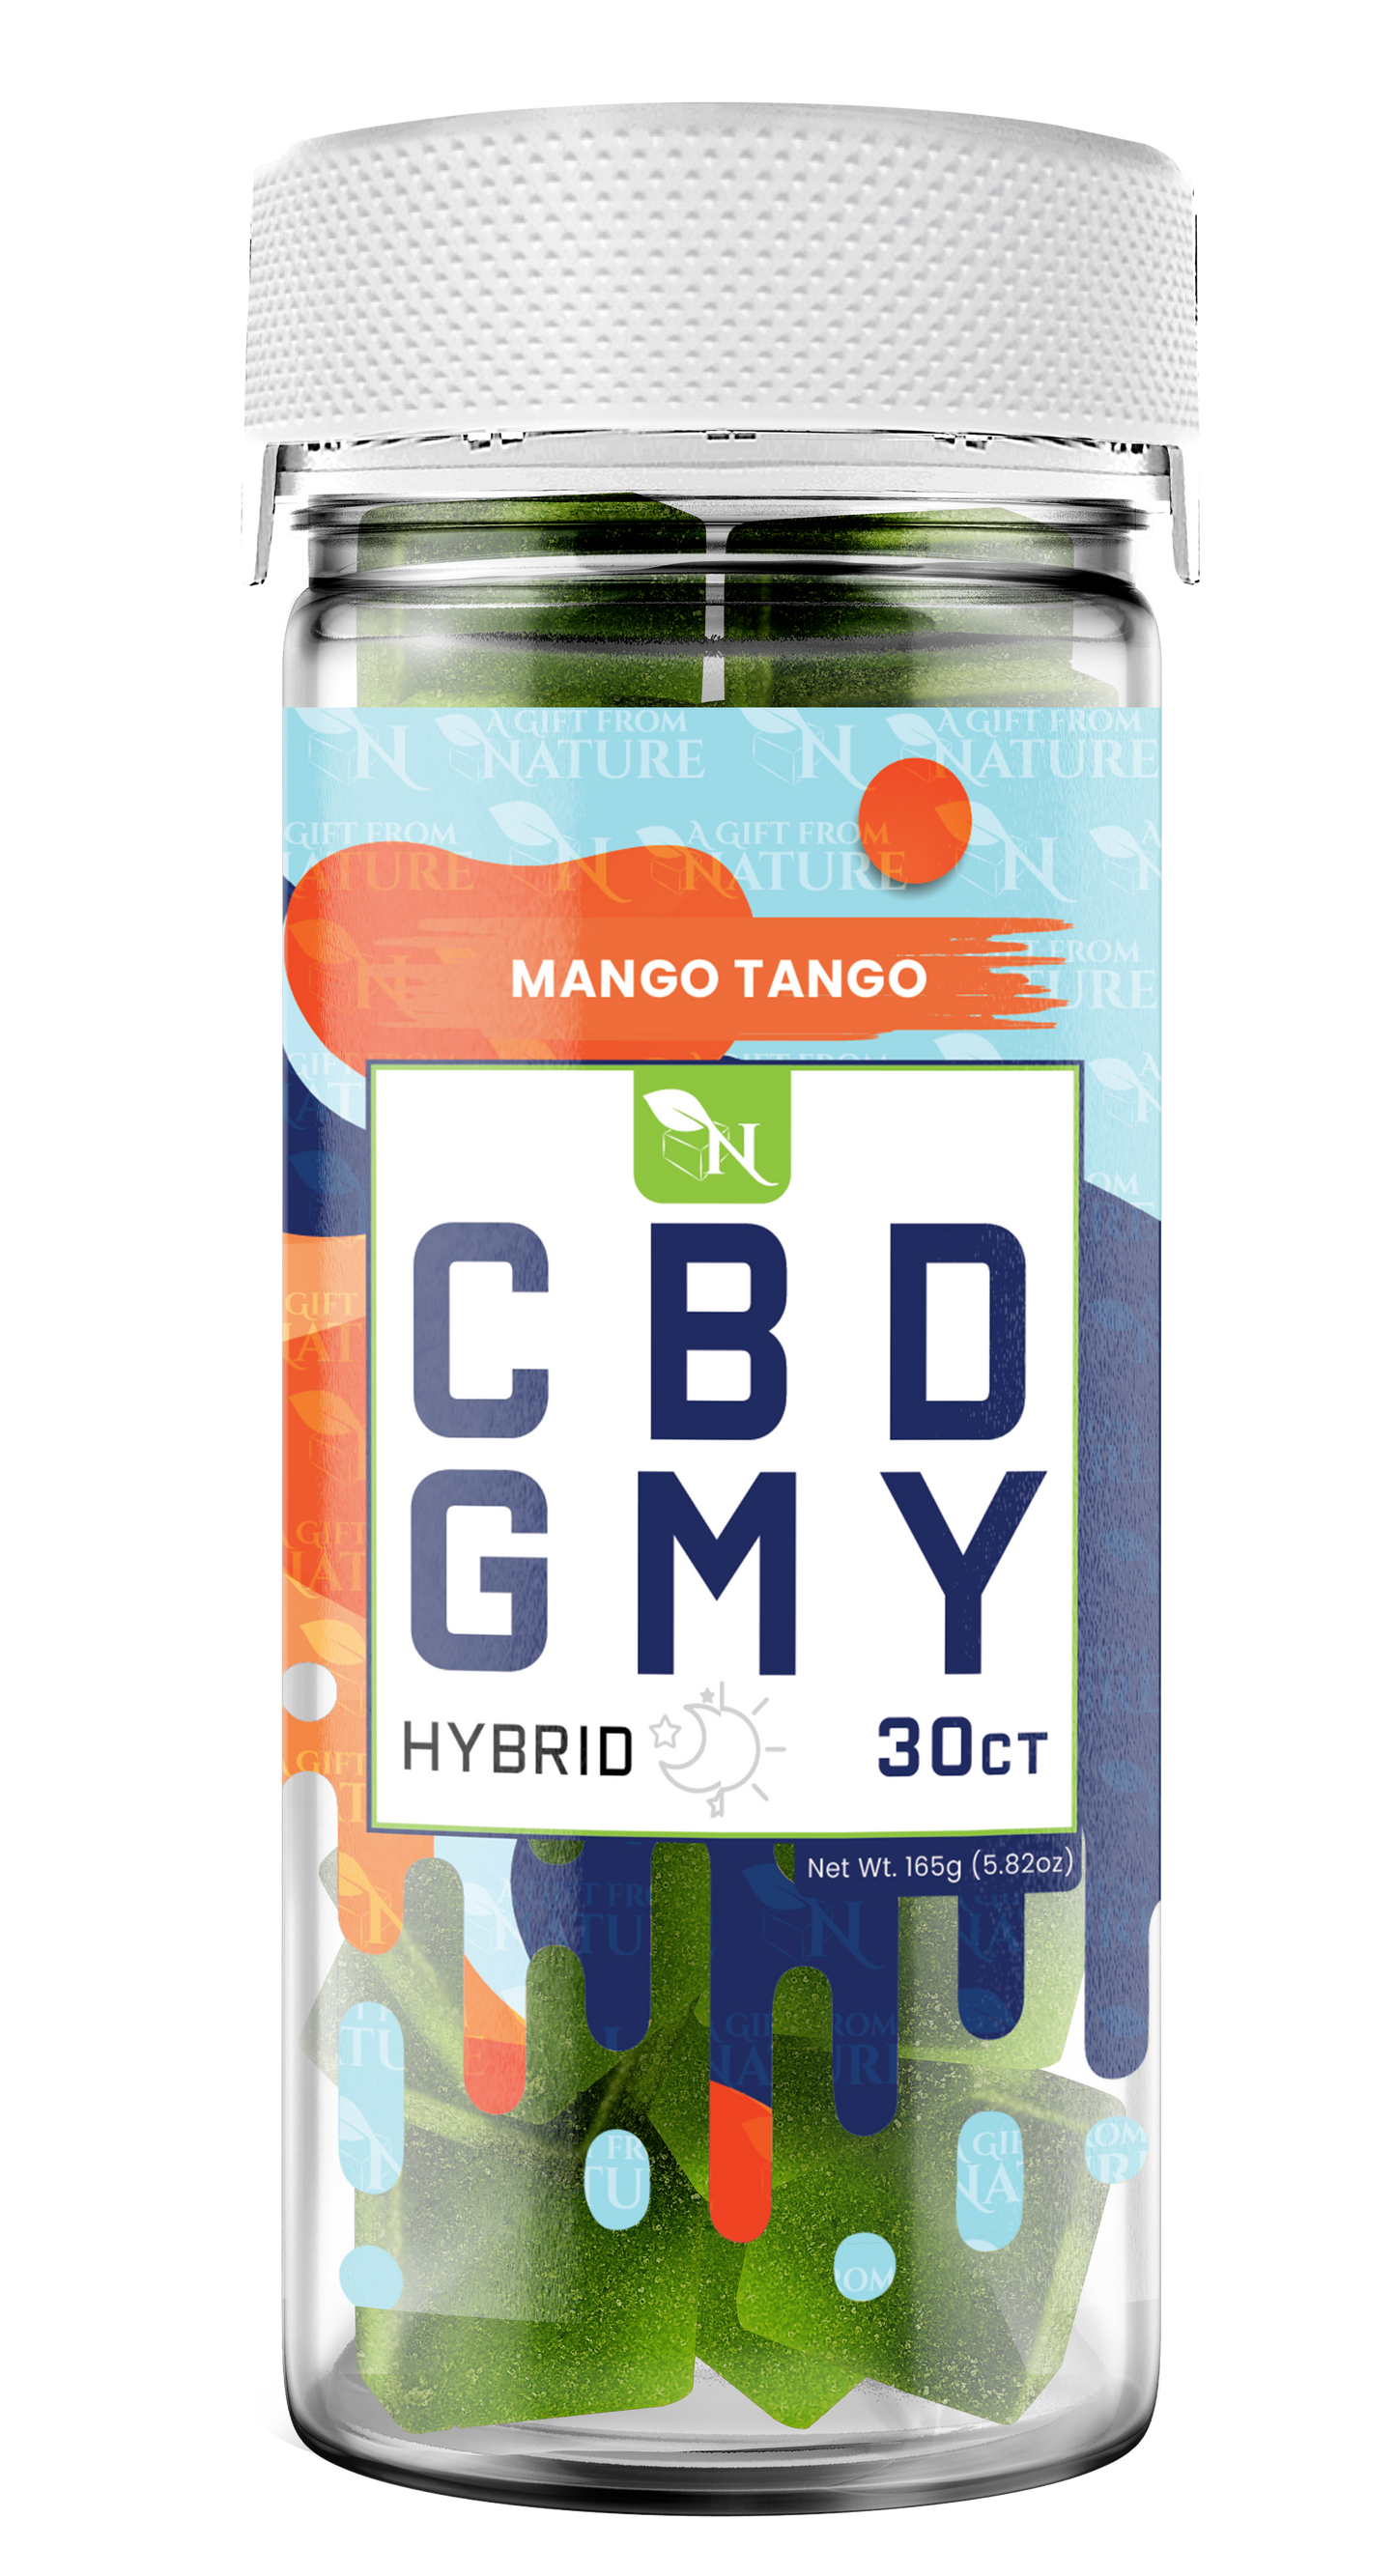 AGFN CBD GMY CBD Gummies I 1500MG/30ct/Jar